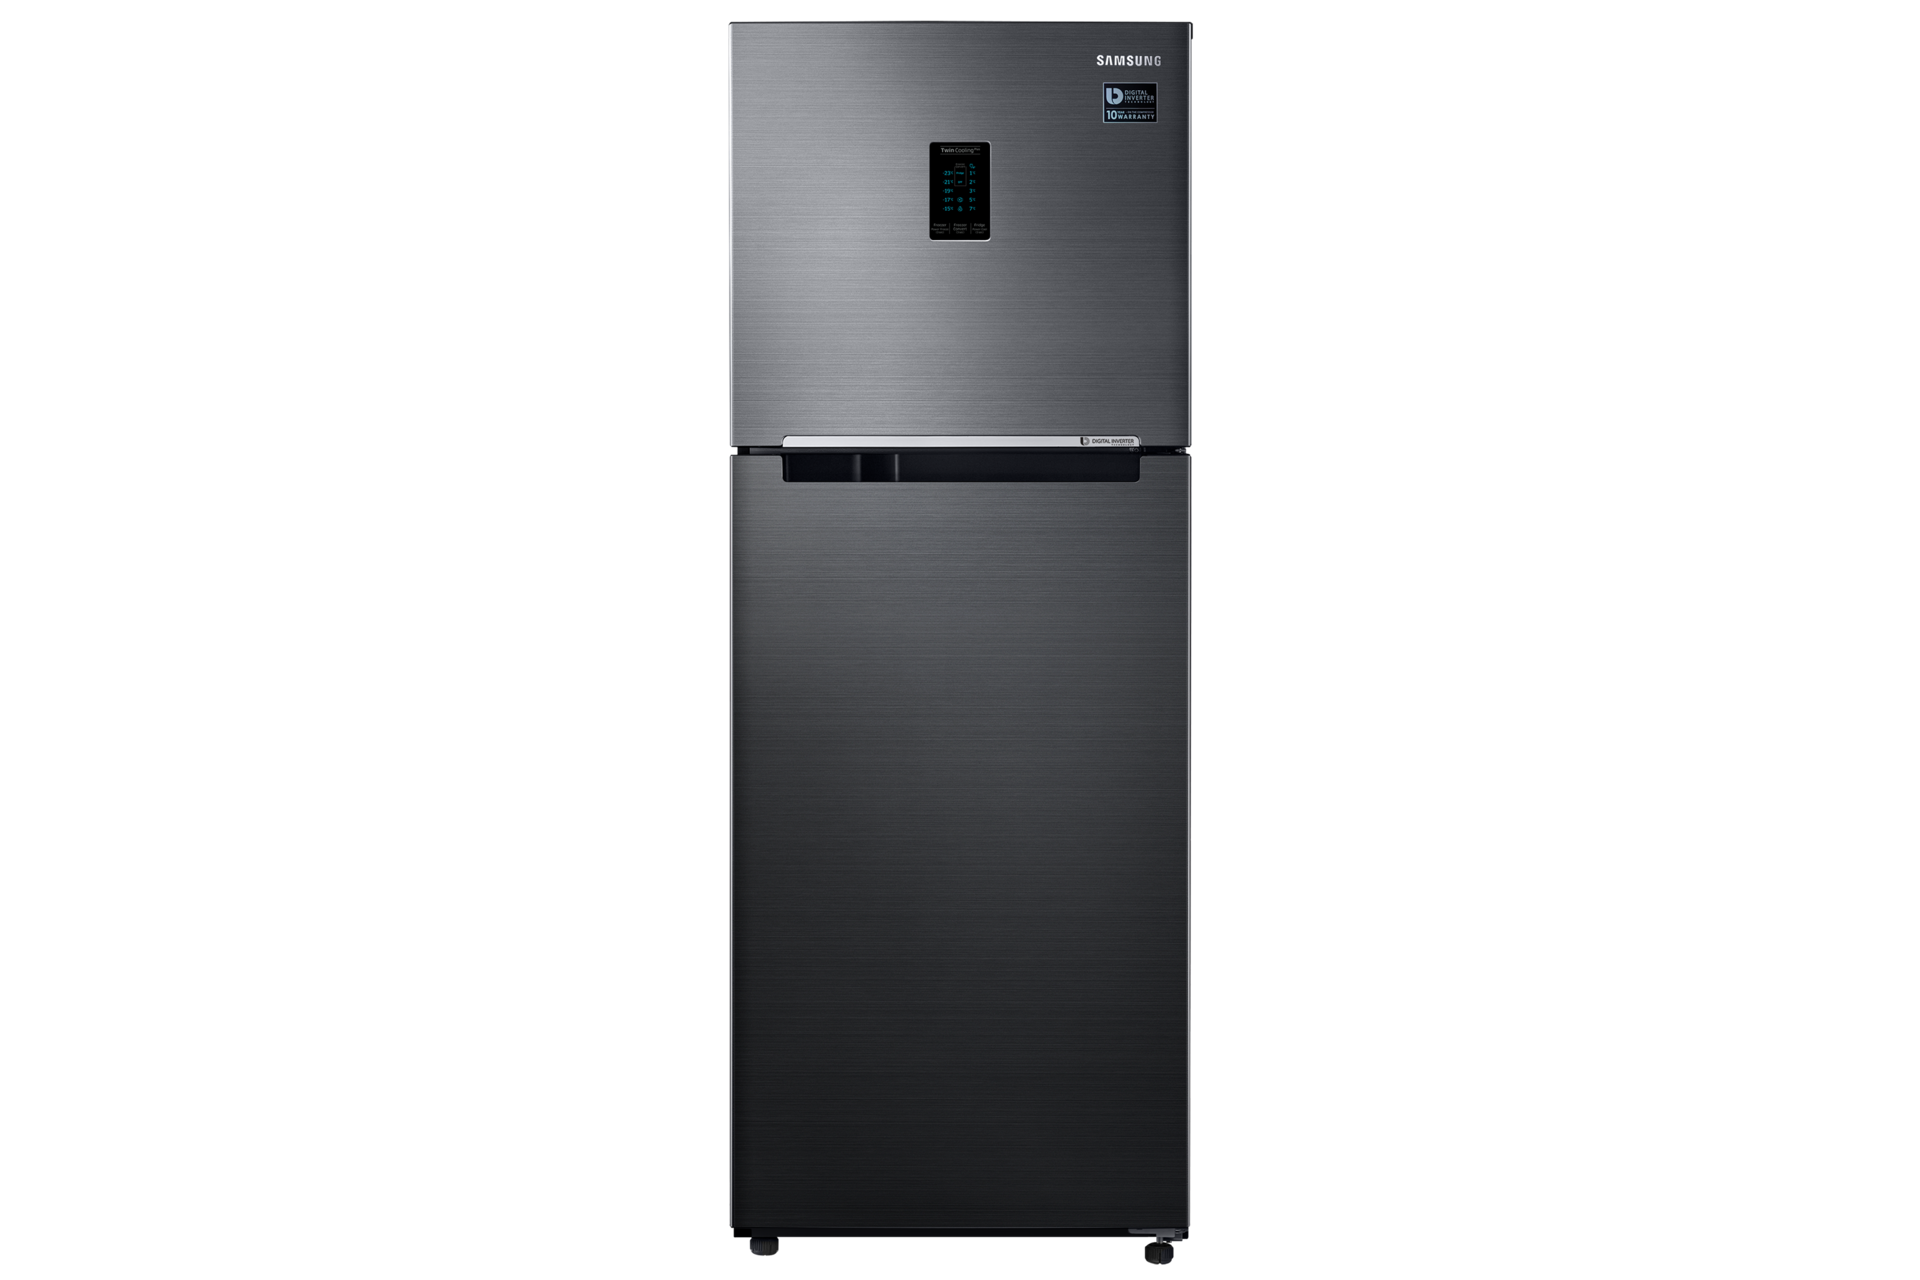 Rb29 Fridge Freezer With Digital Inverter Technology 290 L Samsung Support Uk